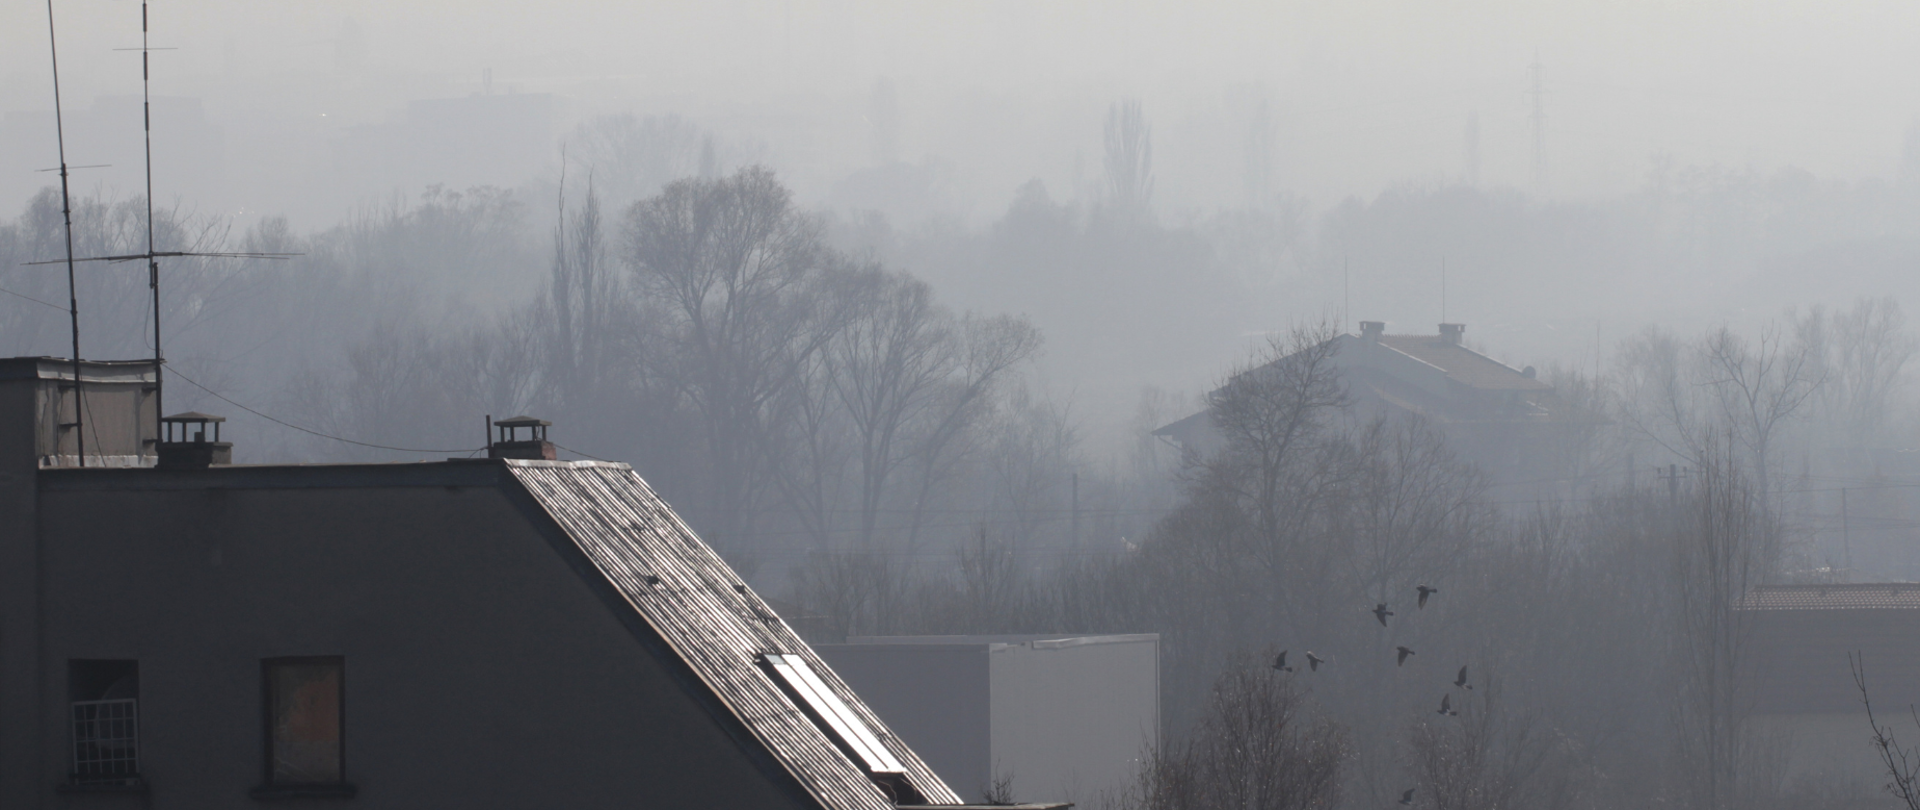 WHO o ryzyku związanym z zanieczyszczeniem powietrza w Polsce